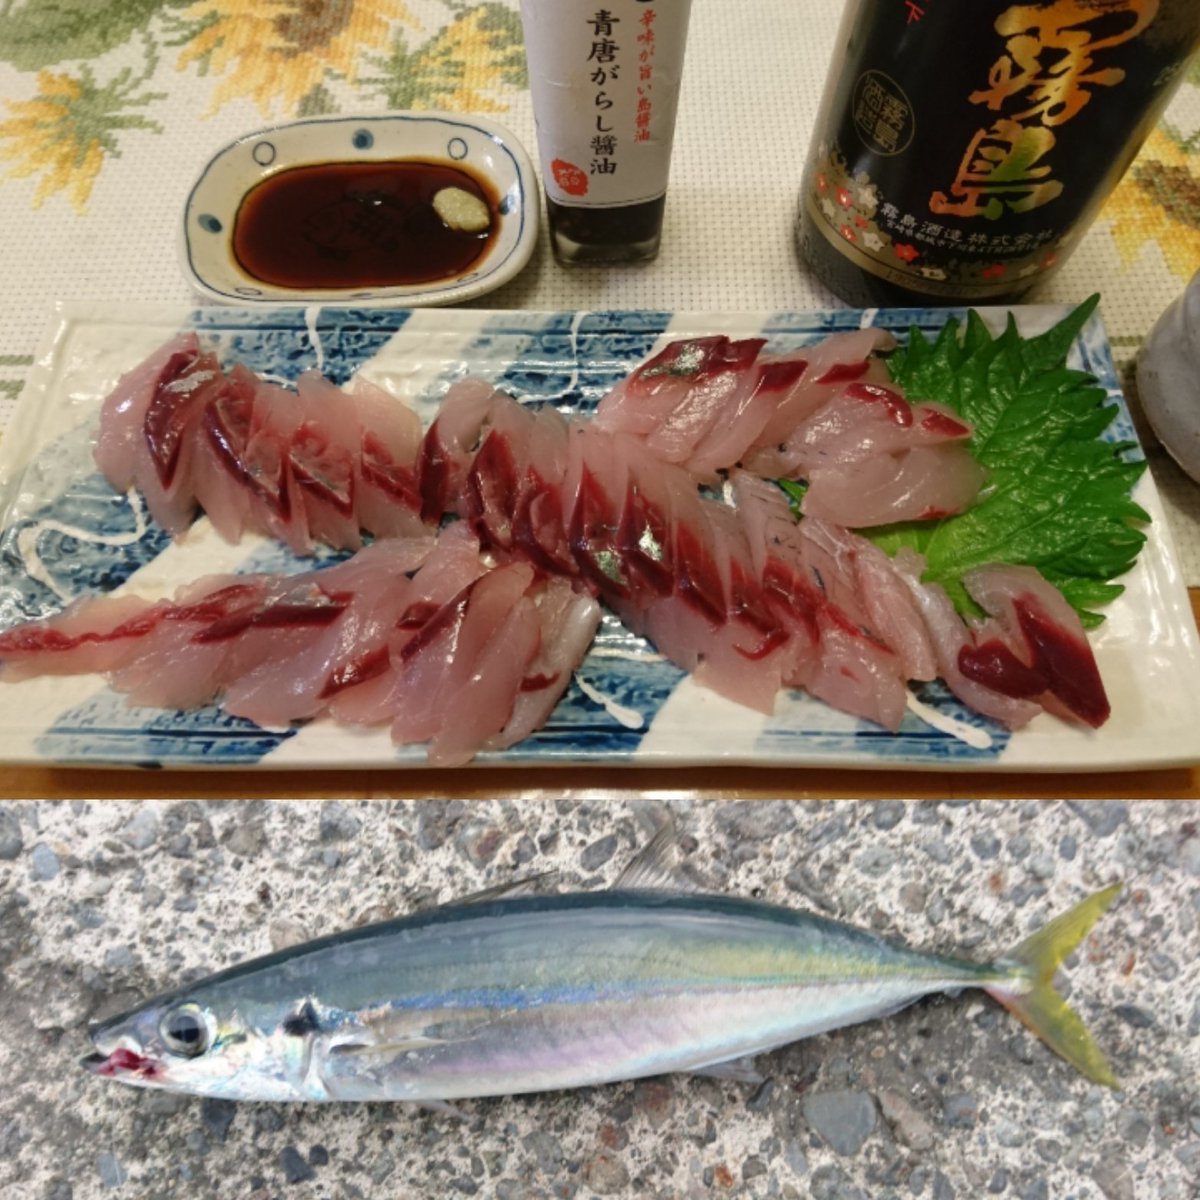 ট ইট র Y Katsu Fishing 両軸遠投カゴ釣り 伊豆大島で釣ったムロアジを刺身にして食ってみました 評判通りの美味しいお刺身でした T Co Pd90r4q0pv